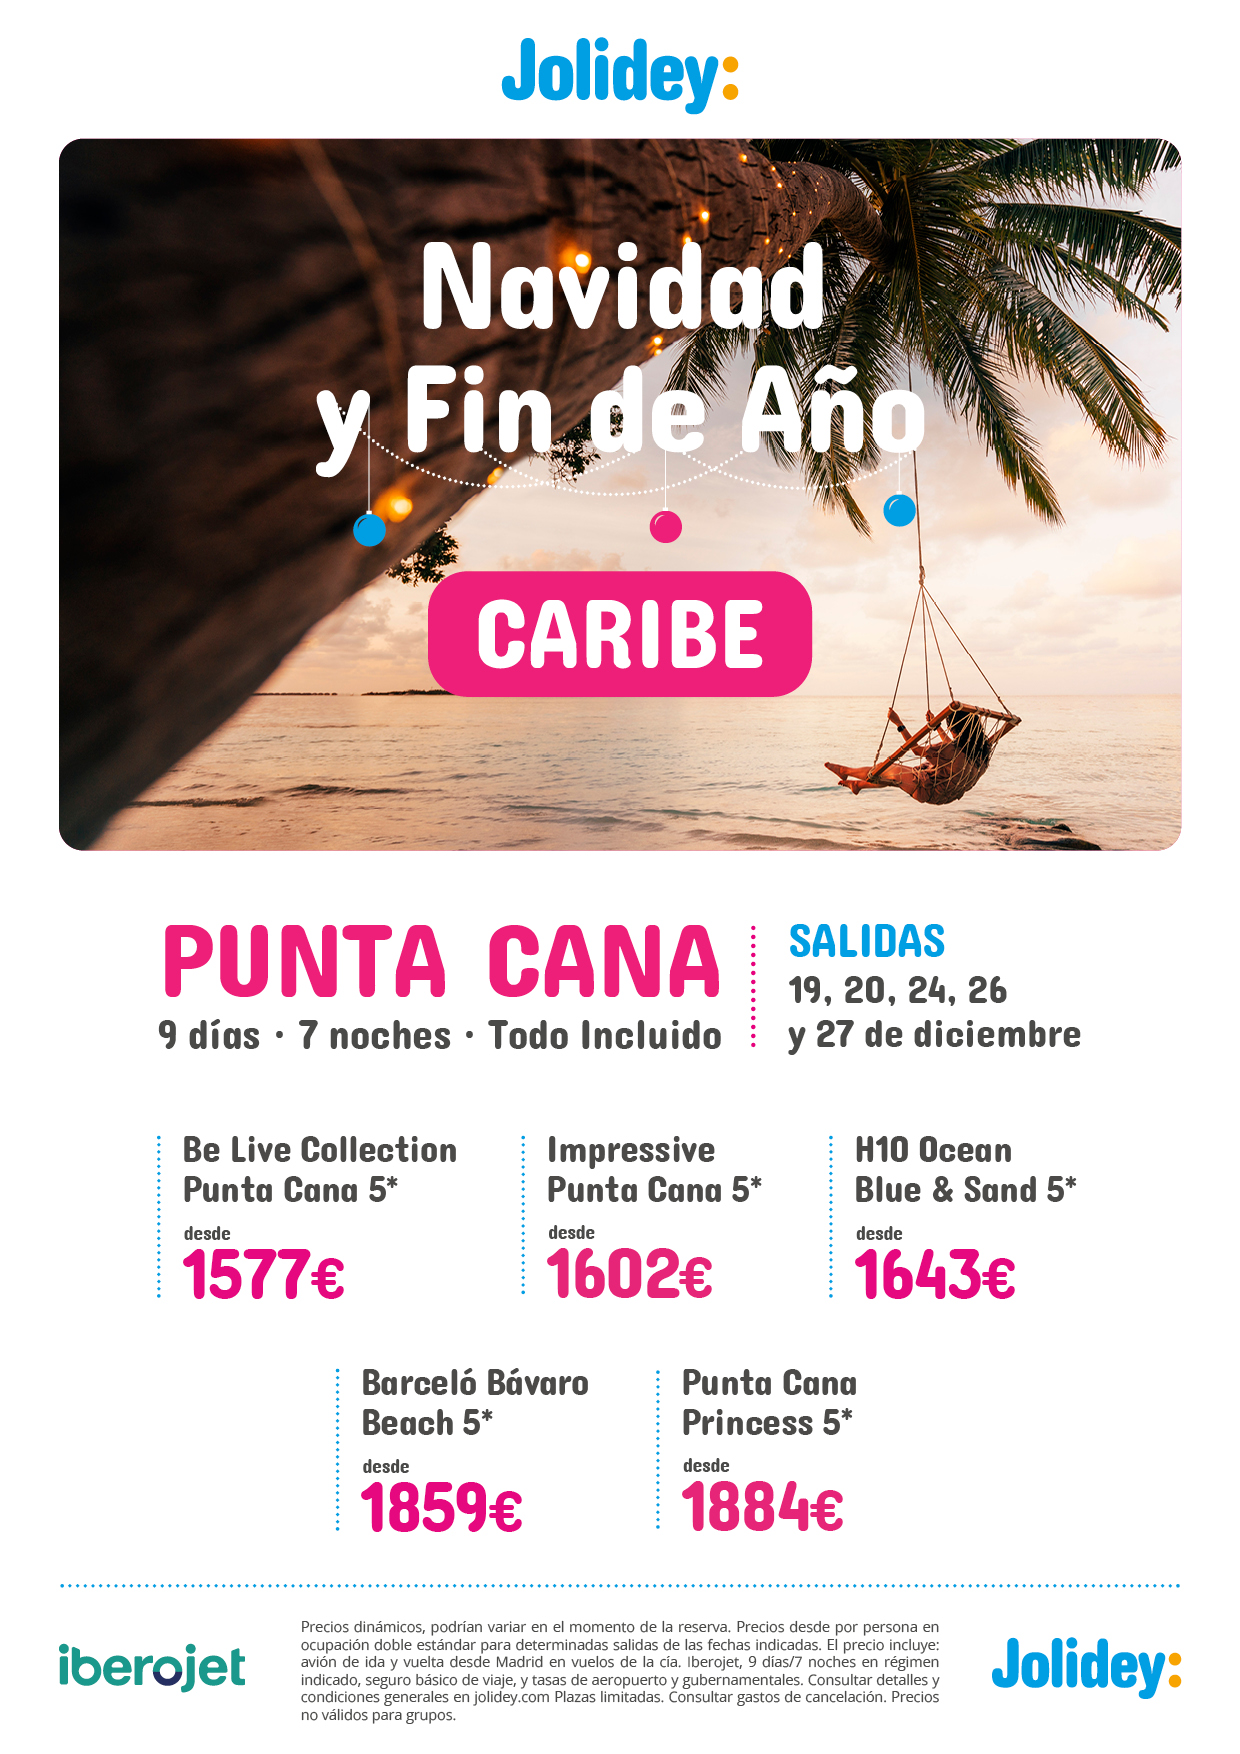 Ofertas Jolidey Navidad y Fin de Año 2022 en Republica Dominicana Punta Cana hoteles 5 estrellas Todo Incluido 9 dias salidas en vuelo directo desde Madrid